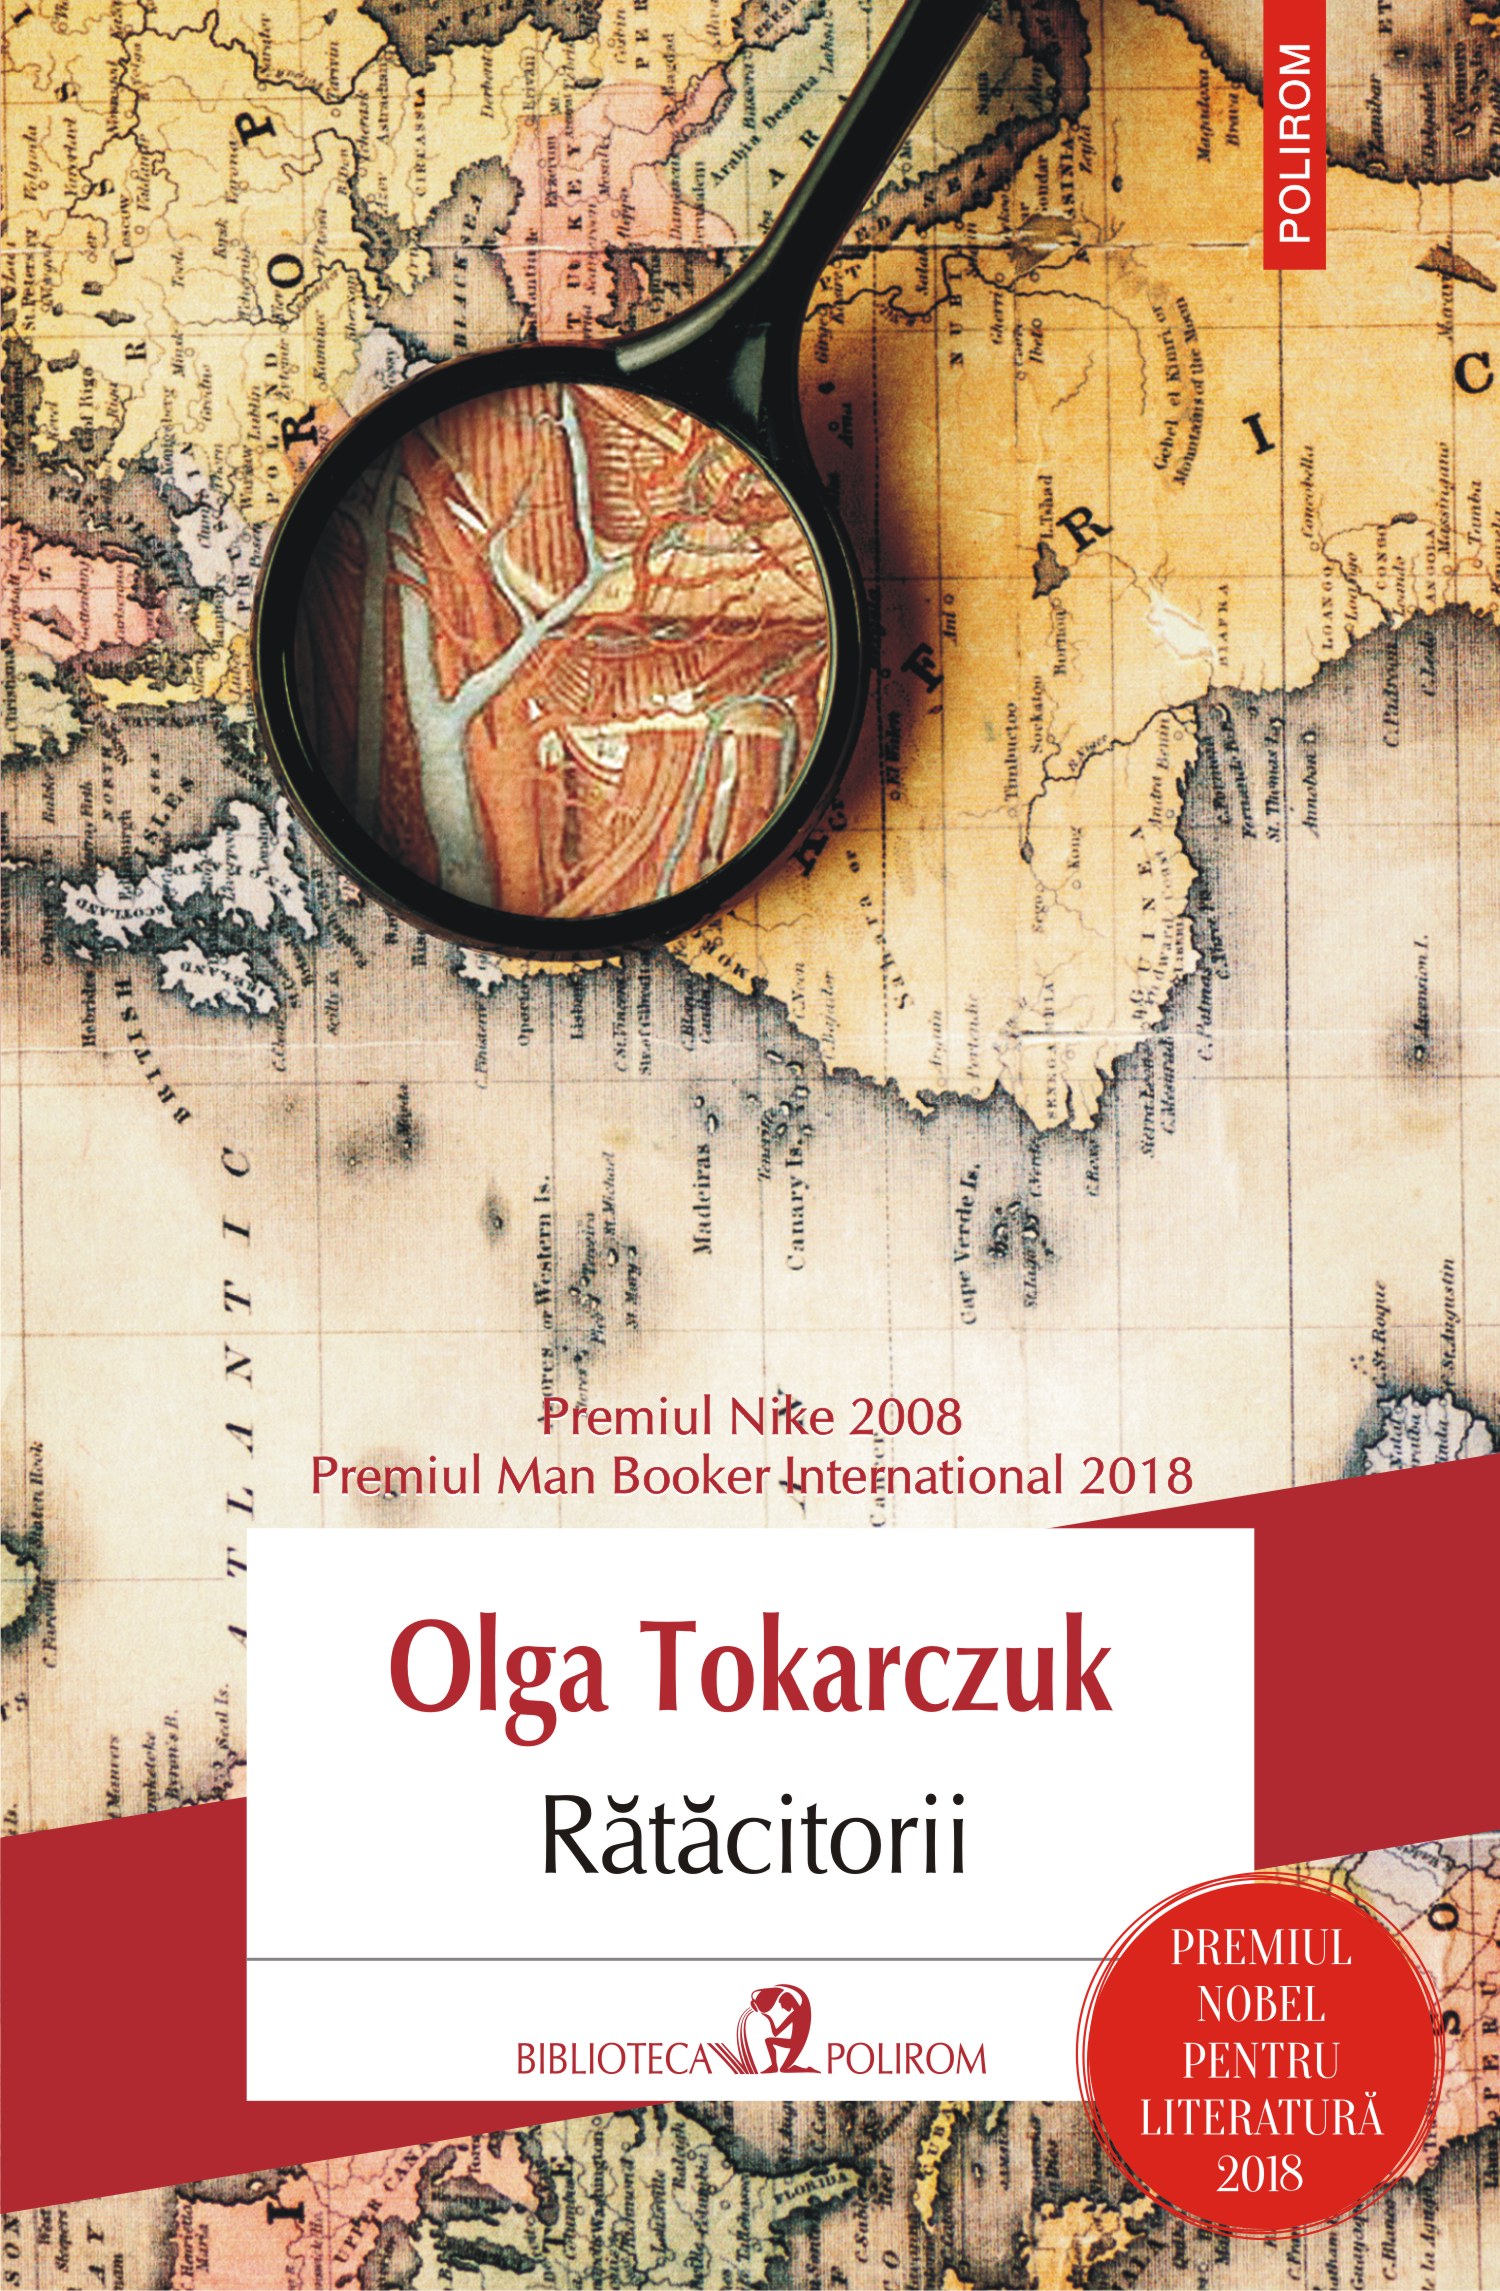 eBook Ratacitorii - Olga Tokarczuk